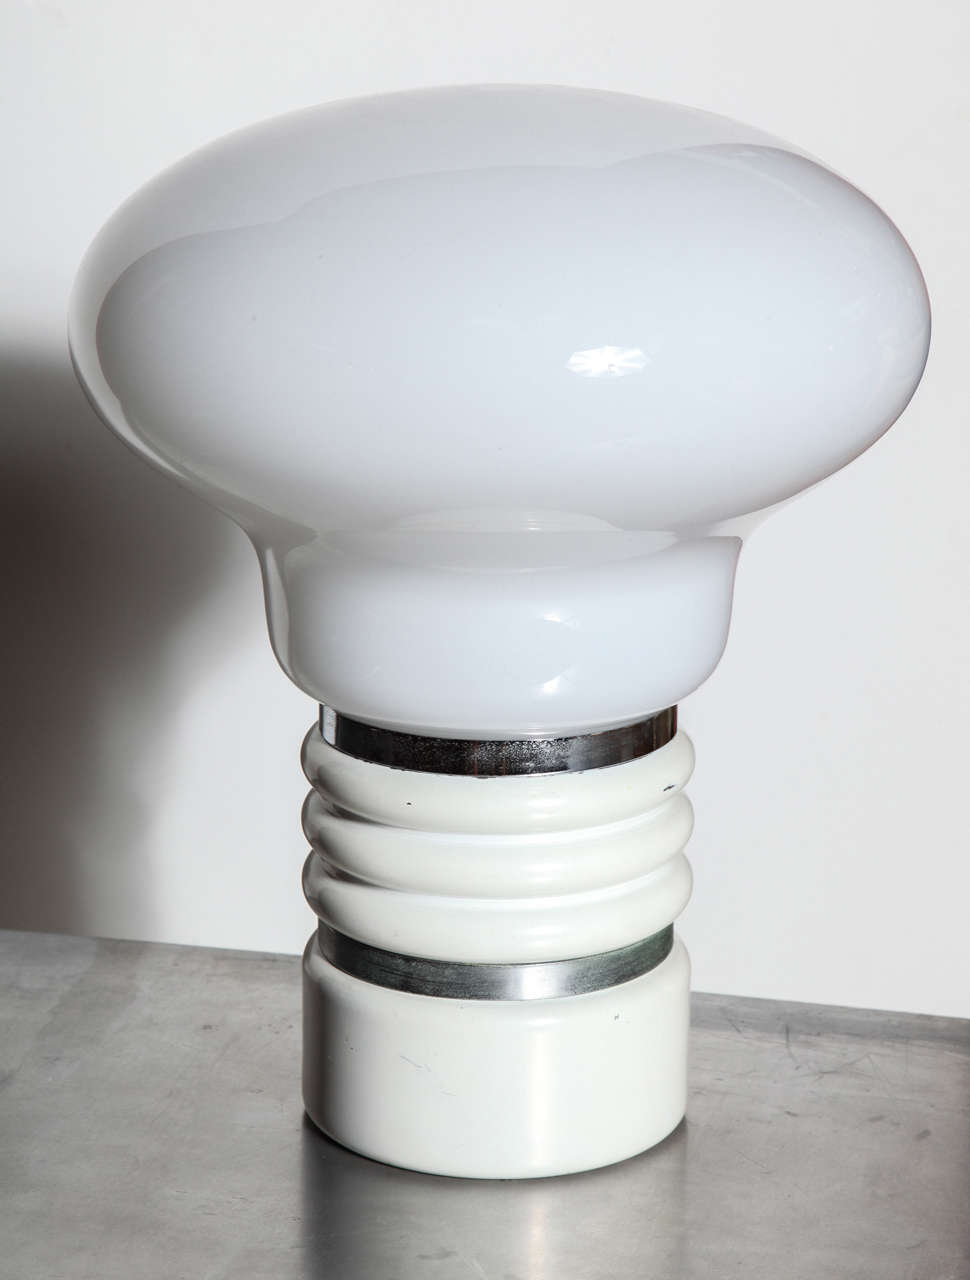 Lampe de table moderne européenne Pop Art en chrome et verre Mazzega de Murano.  Avec un grand  abat-jour soufflé à la main en forme de champignon translucide en verre blanc 14D sur une base 6D chromée et nervurée en blanc cassé. Ressemble à une